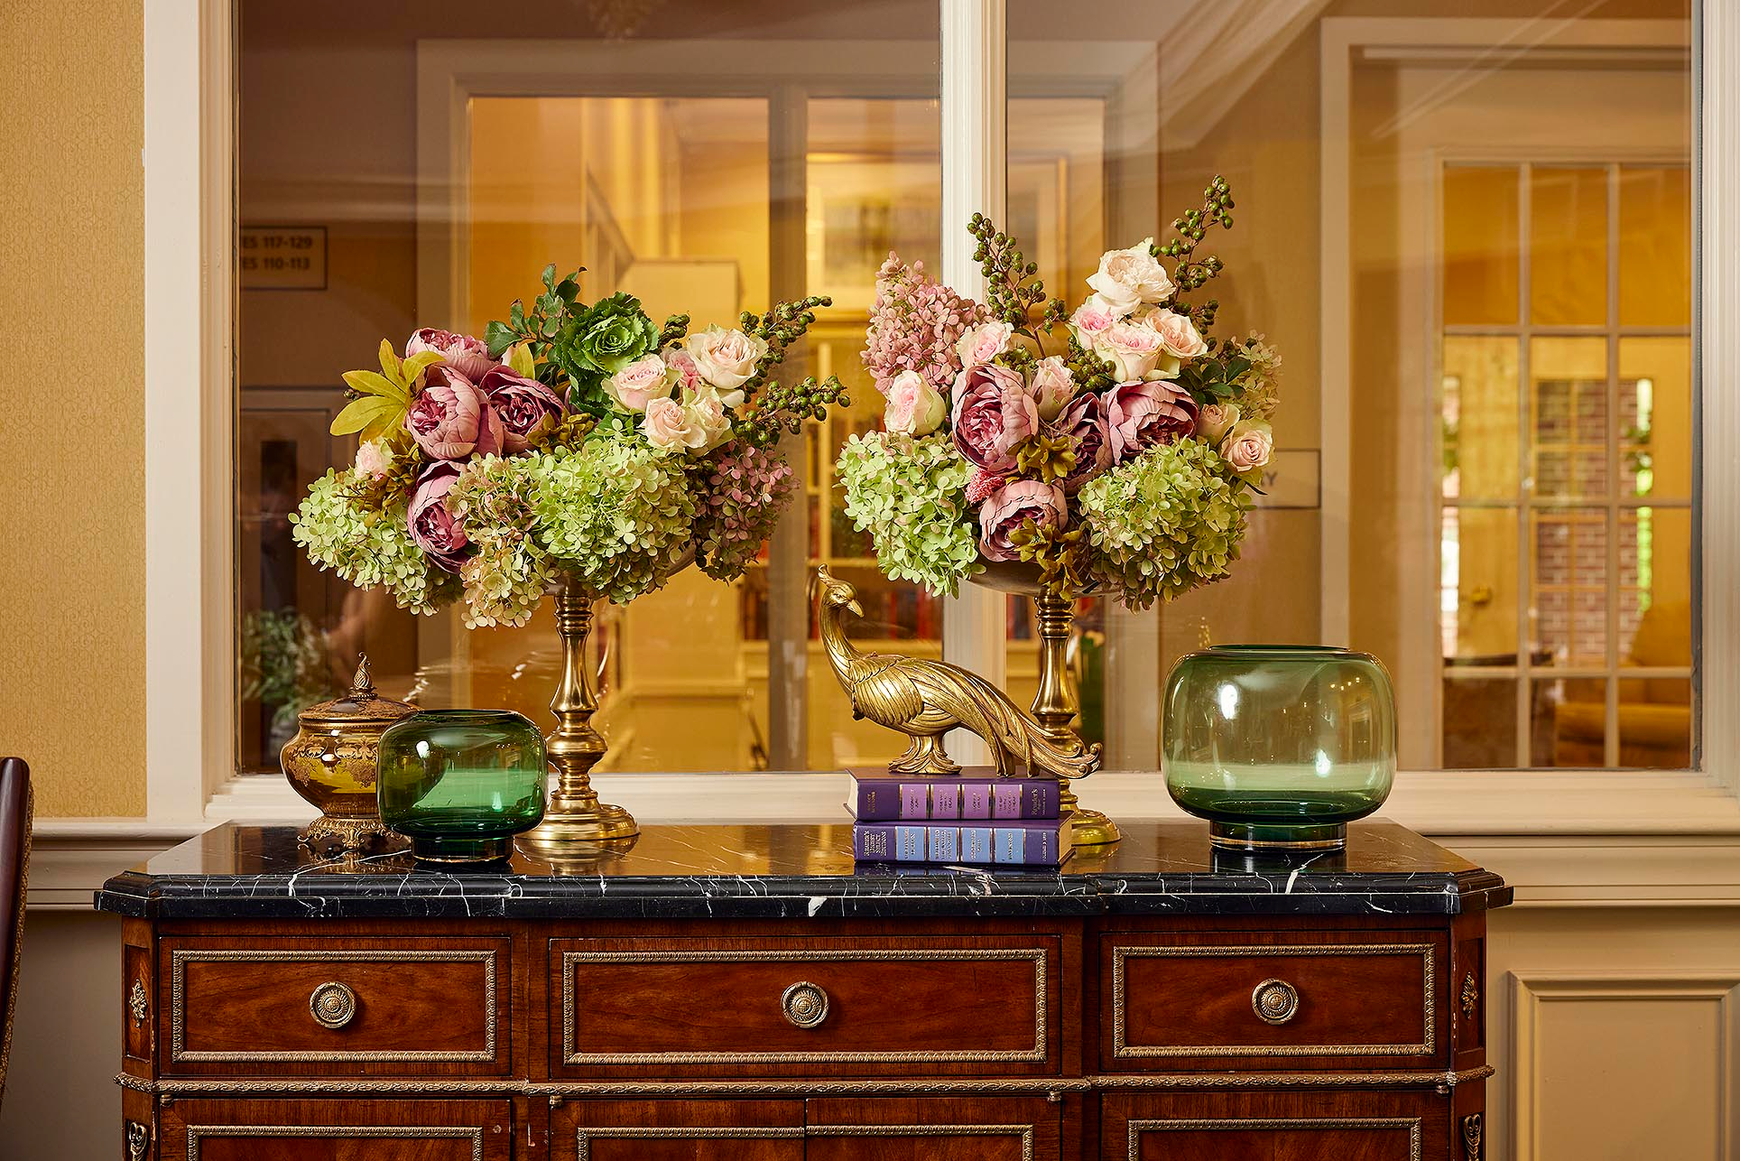 Elegant floral arrangments on a credenza